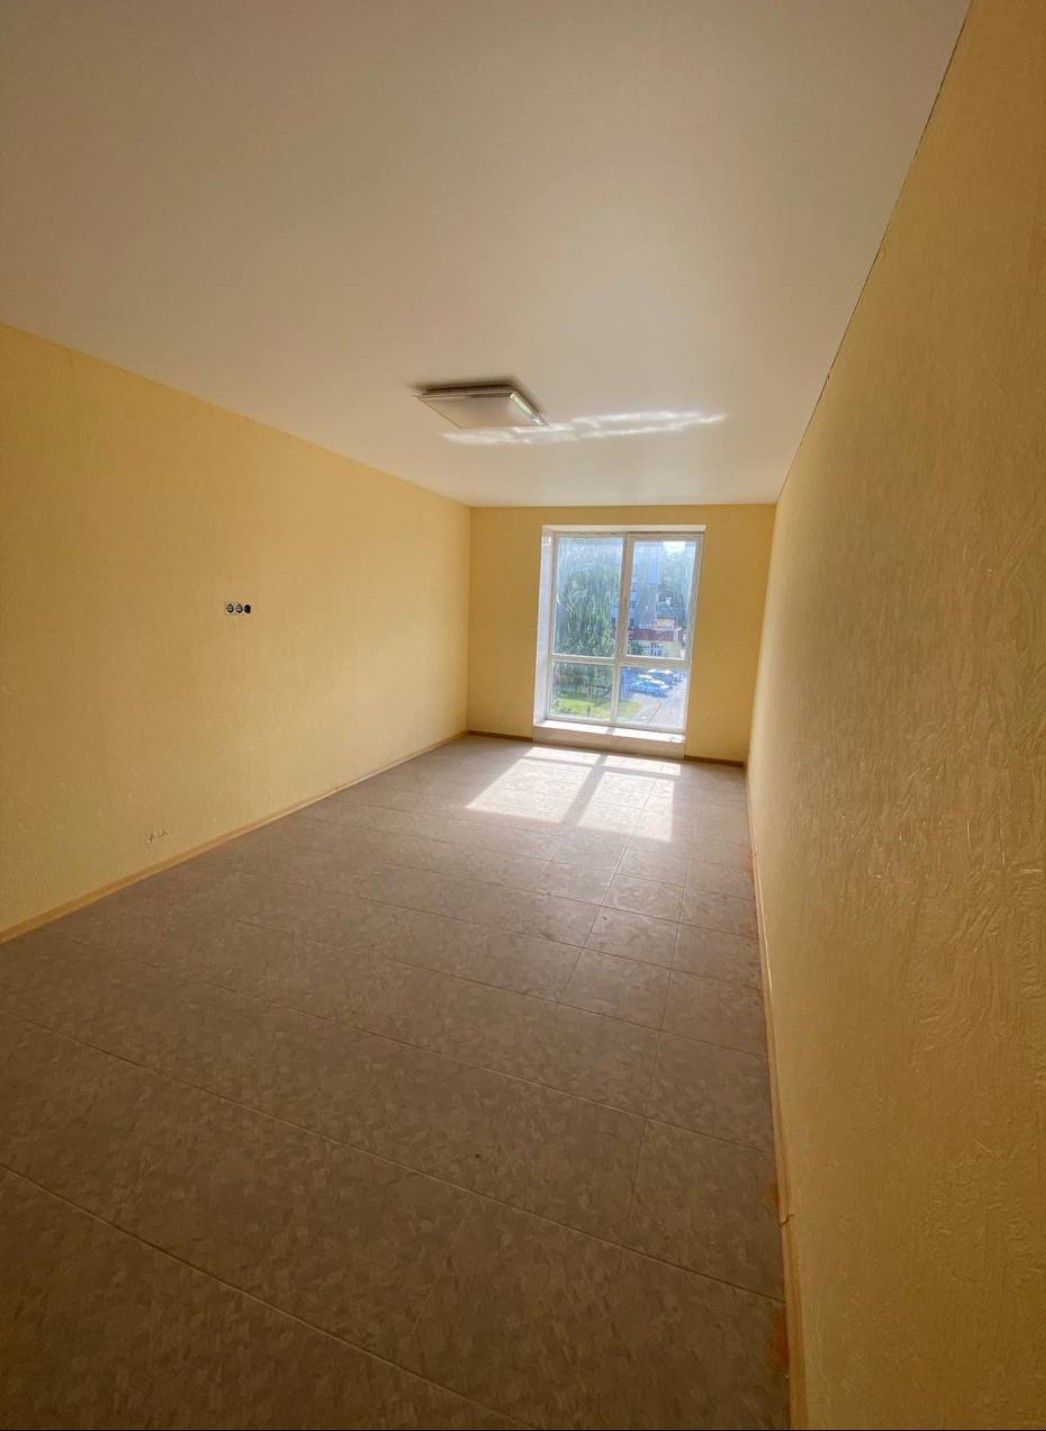 Продается 1-х комнатная квартира Трускавец зробленна під 2-х кімнатну